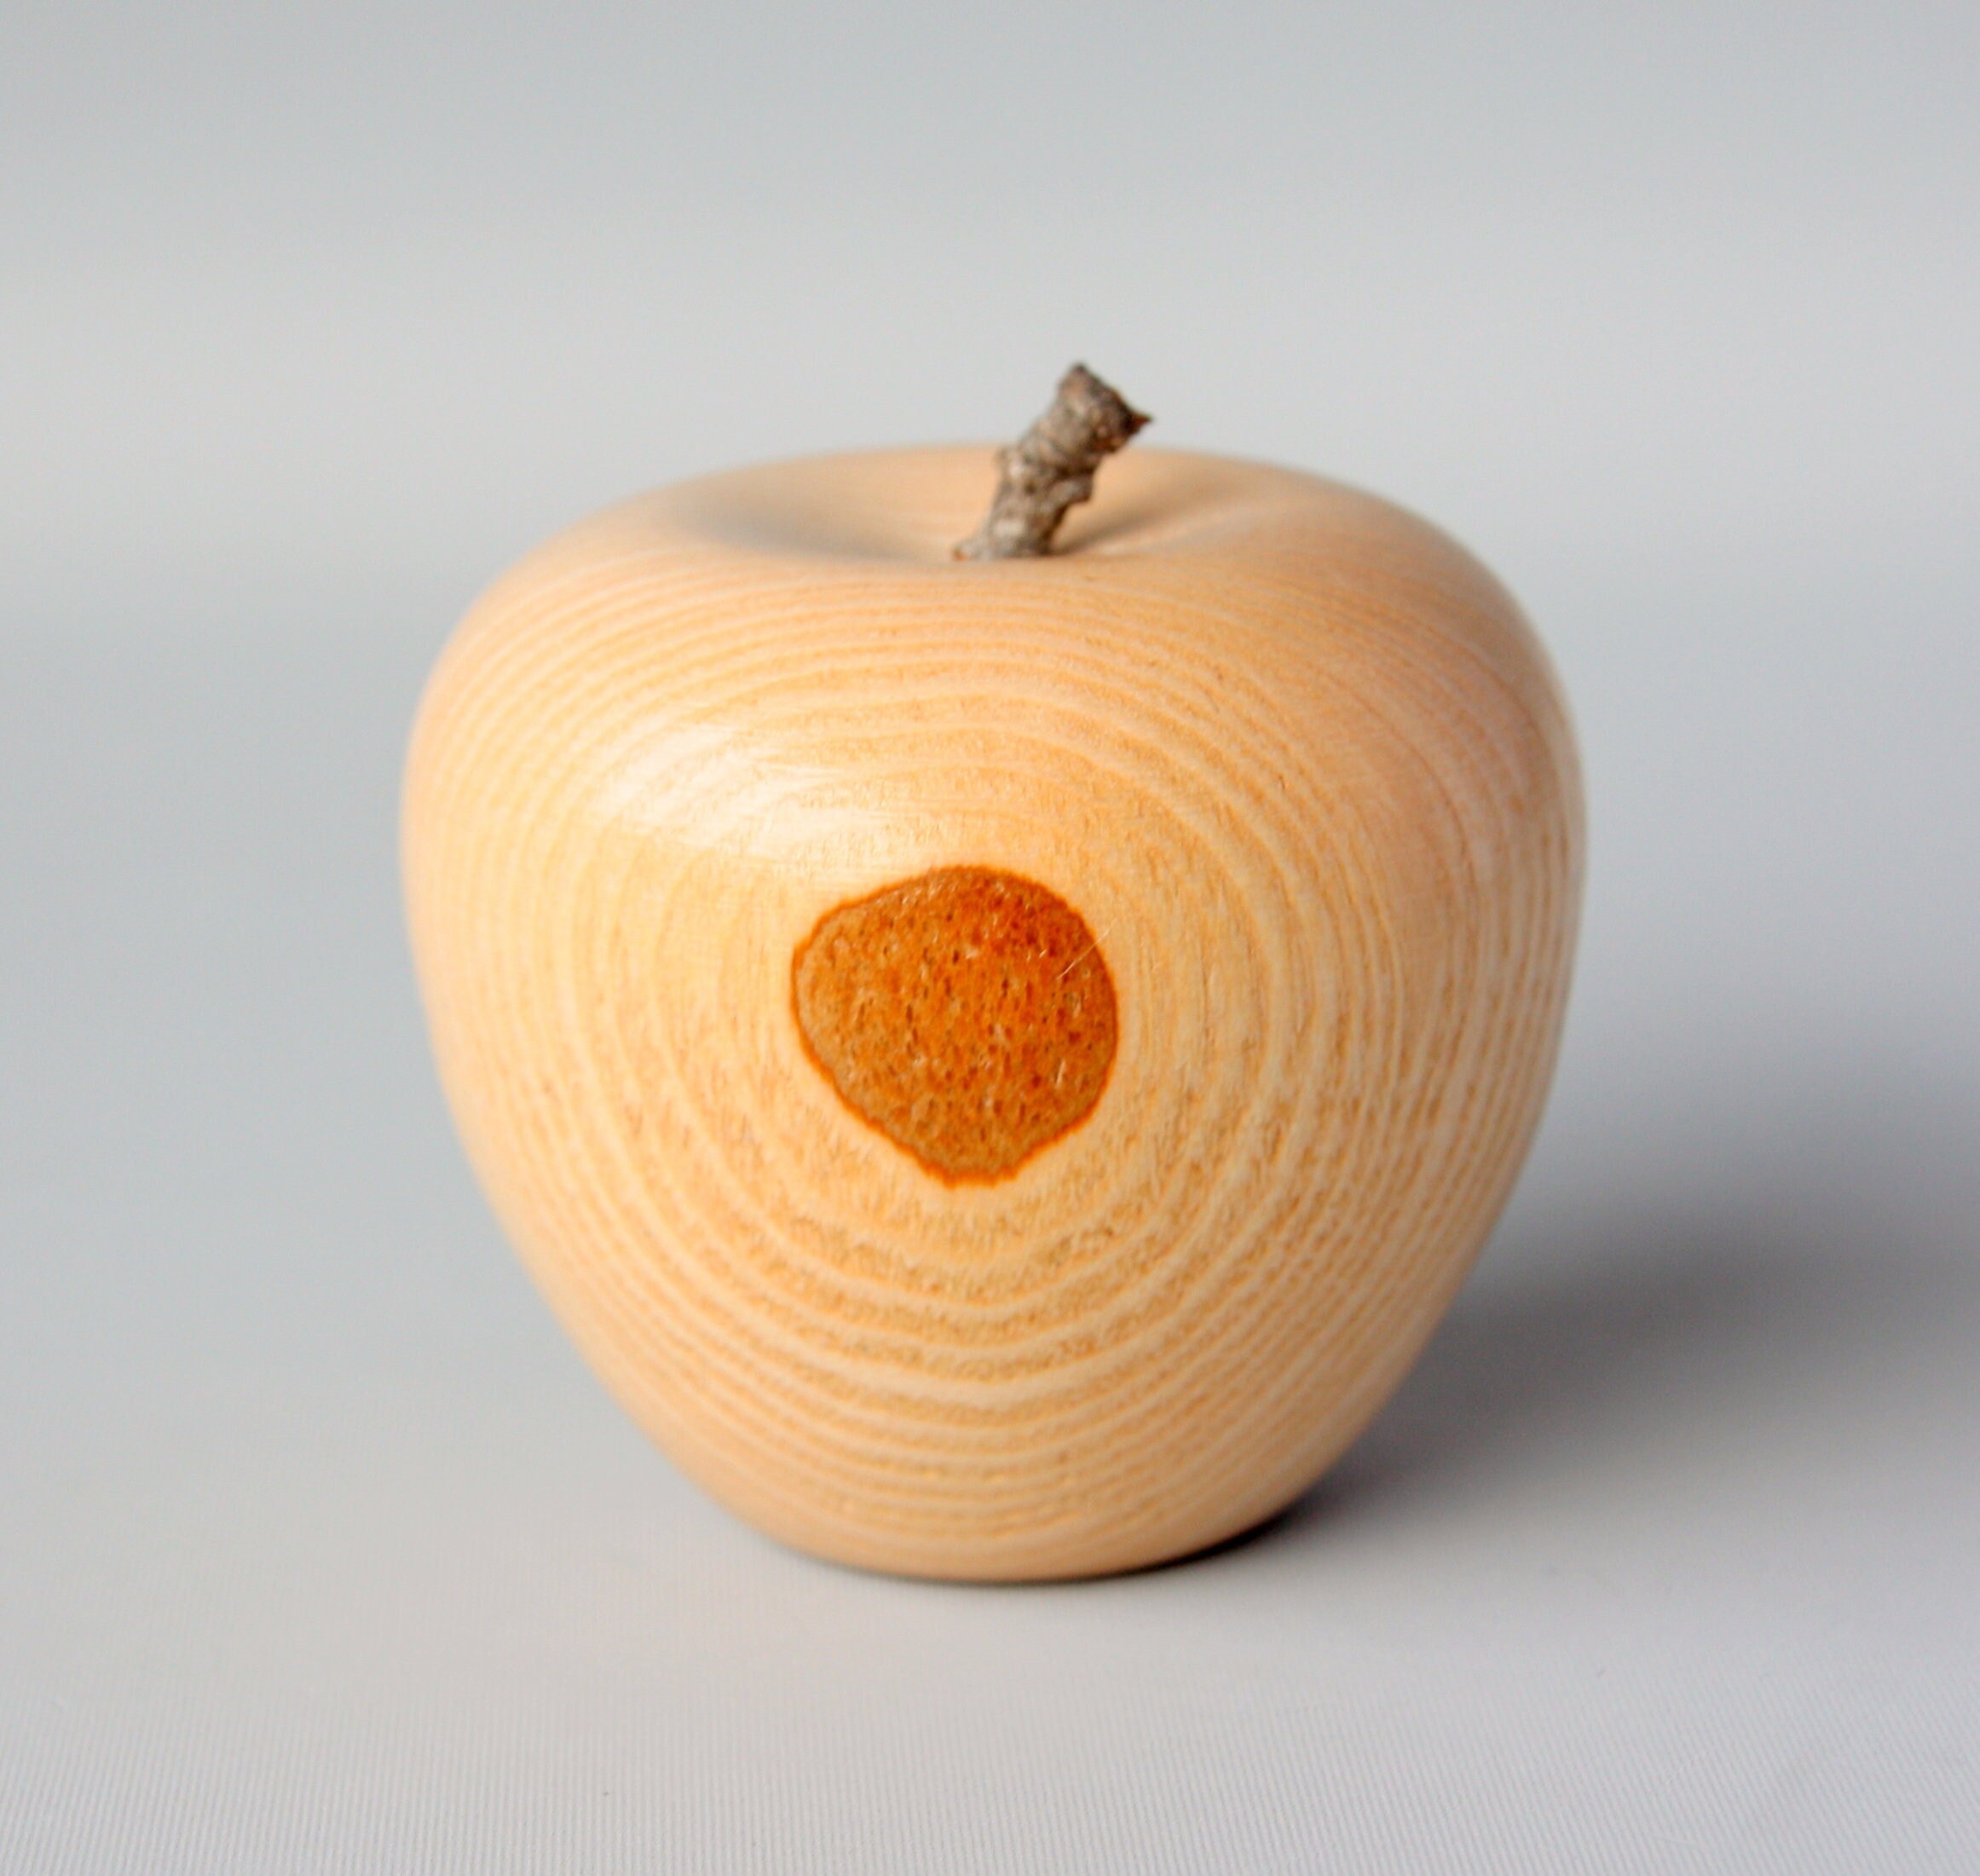 Masterpiece Frammenti di legno di mela 30 mm dimensioni ca 100% legno naturale affumicatore 750 g. Confezione ca 